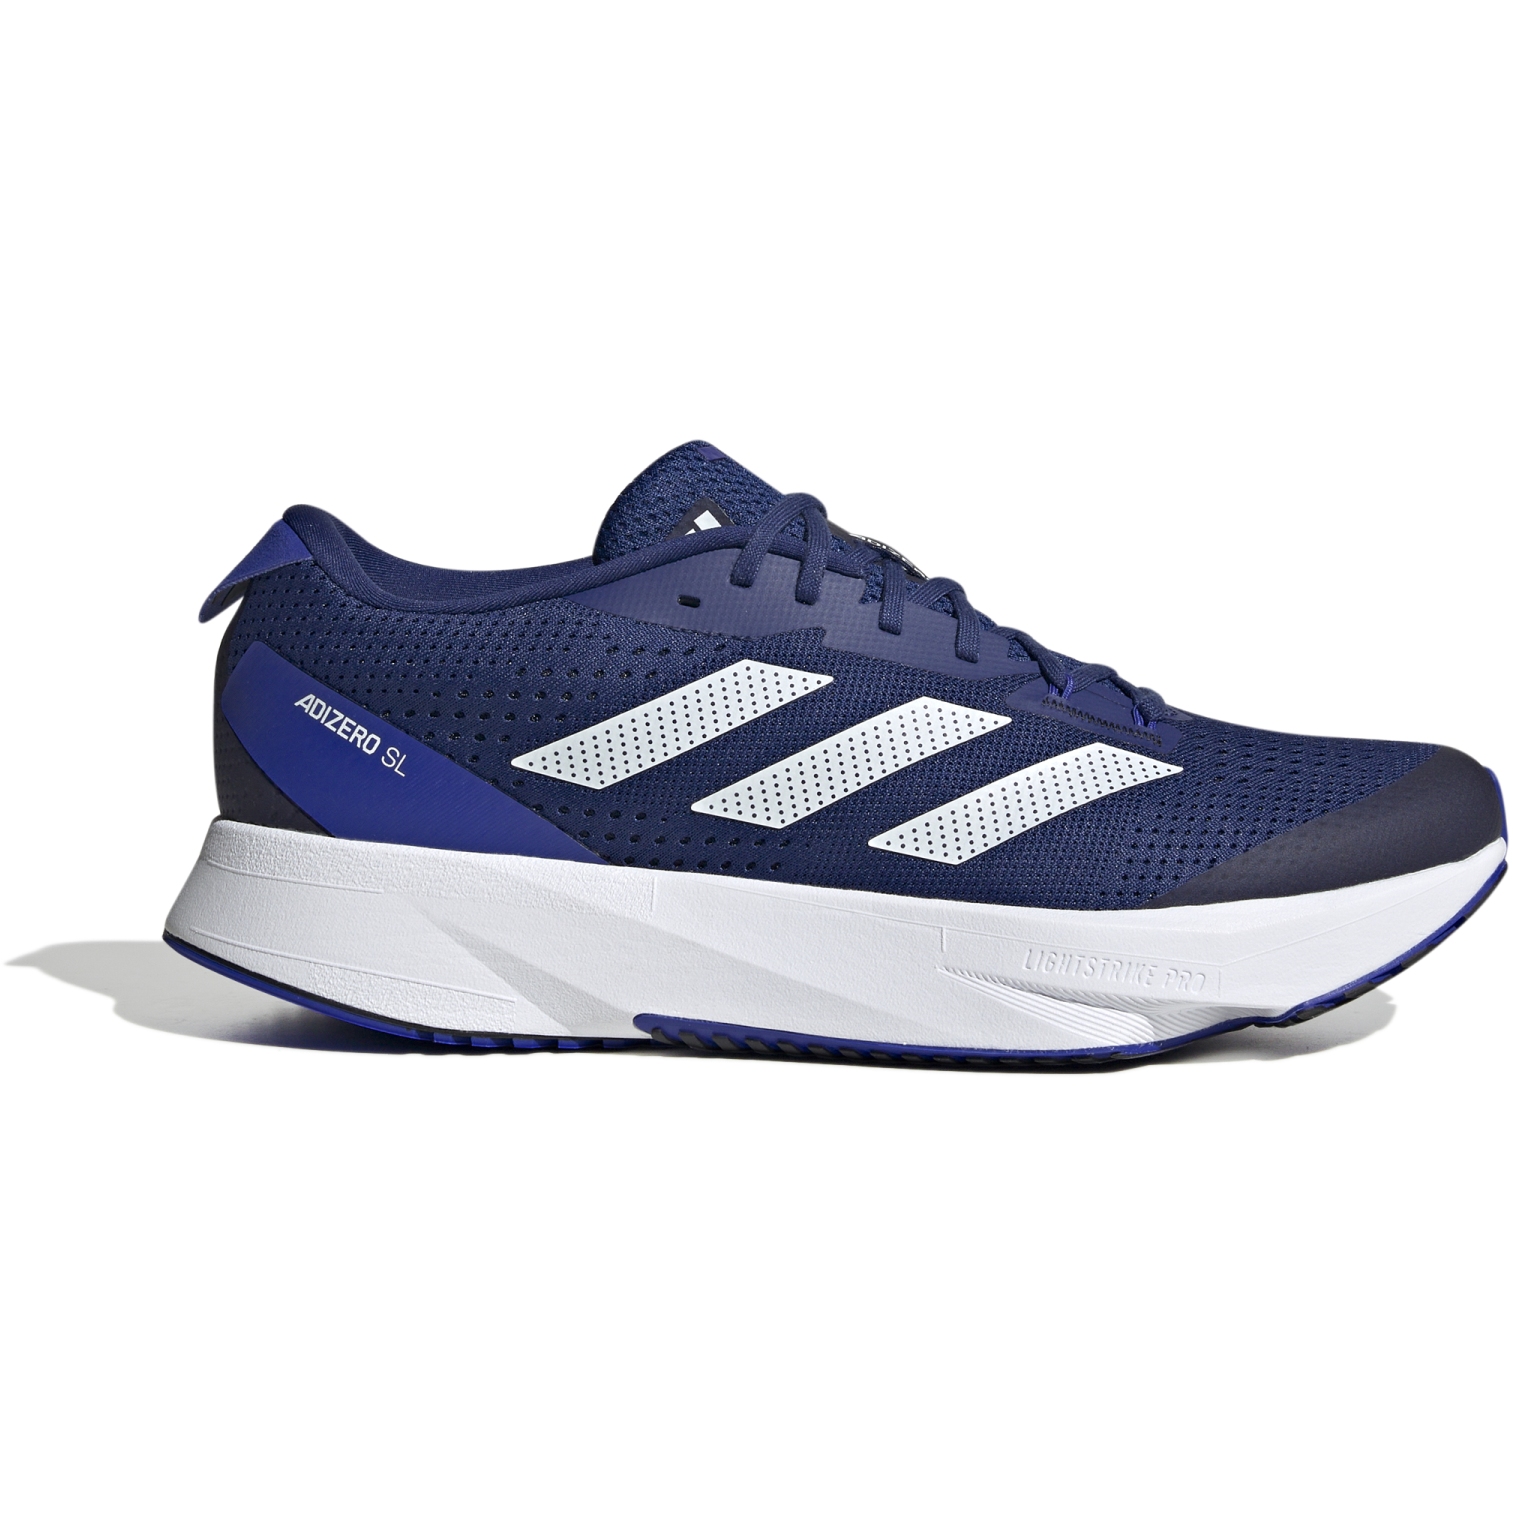 Bild von adidas Adizero Superlight Laufschuhe Herren - victory blue/footwear white/lucid blue HQ1345